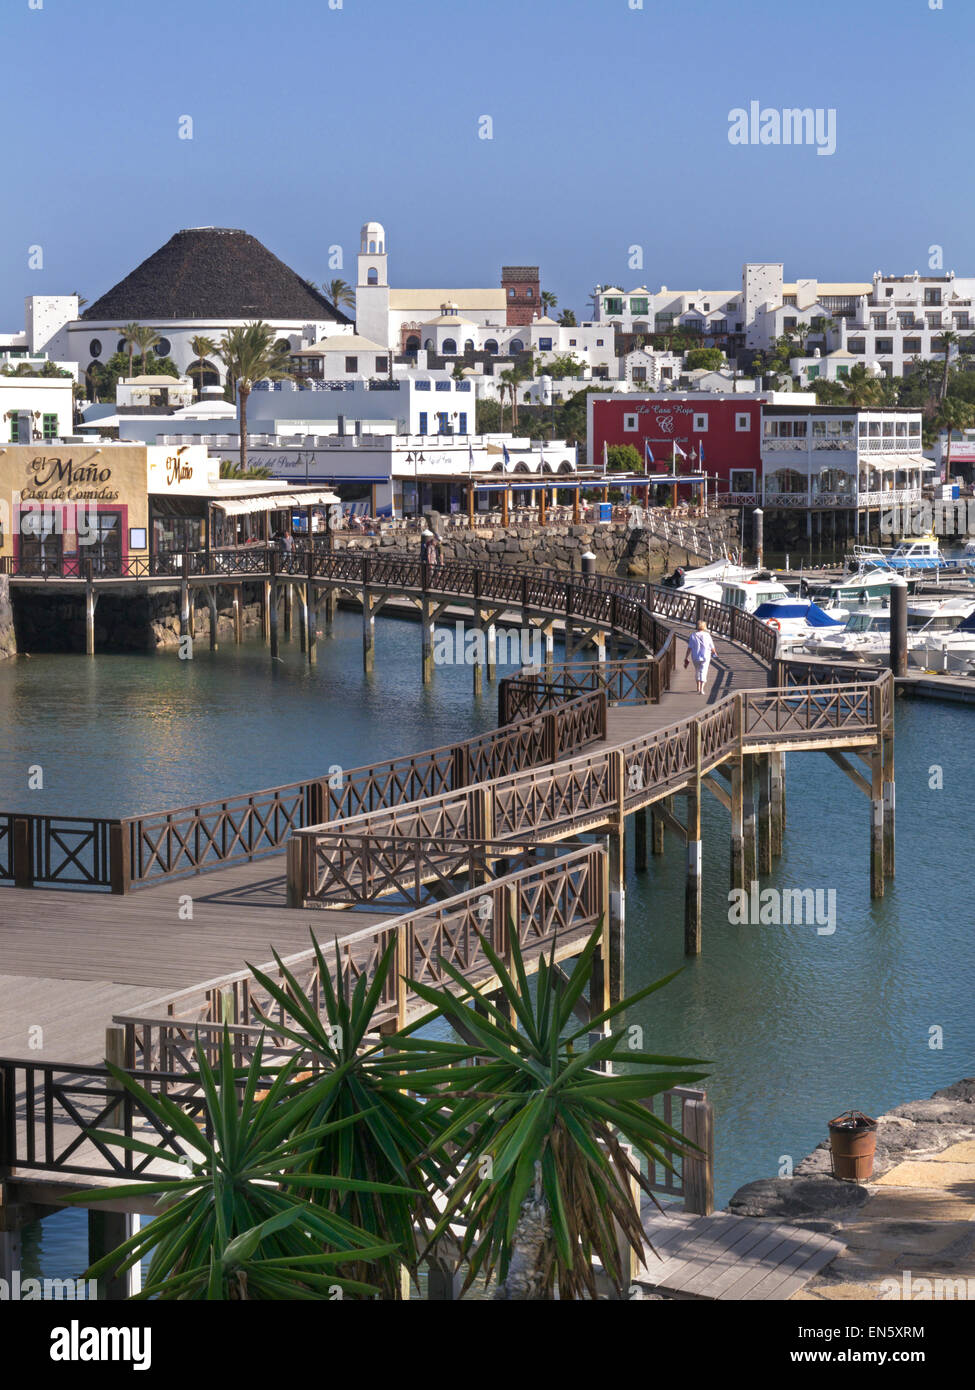 De l'aménagement du port de Marina Rubicon sur la côte sud-ouest de Lanzarote, Canaries Playa Blanca, Espagne Banque D'Images